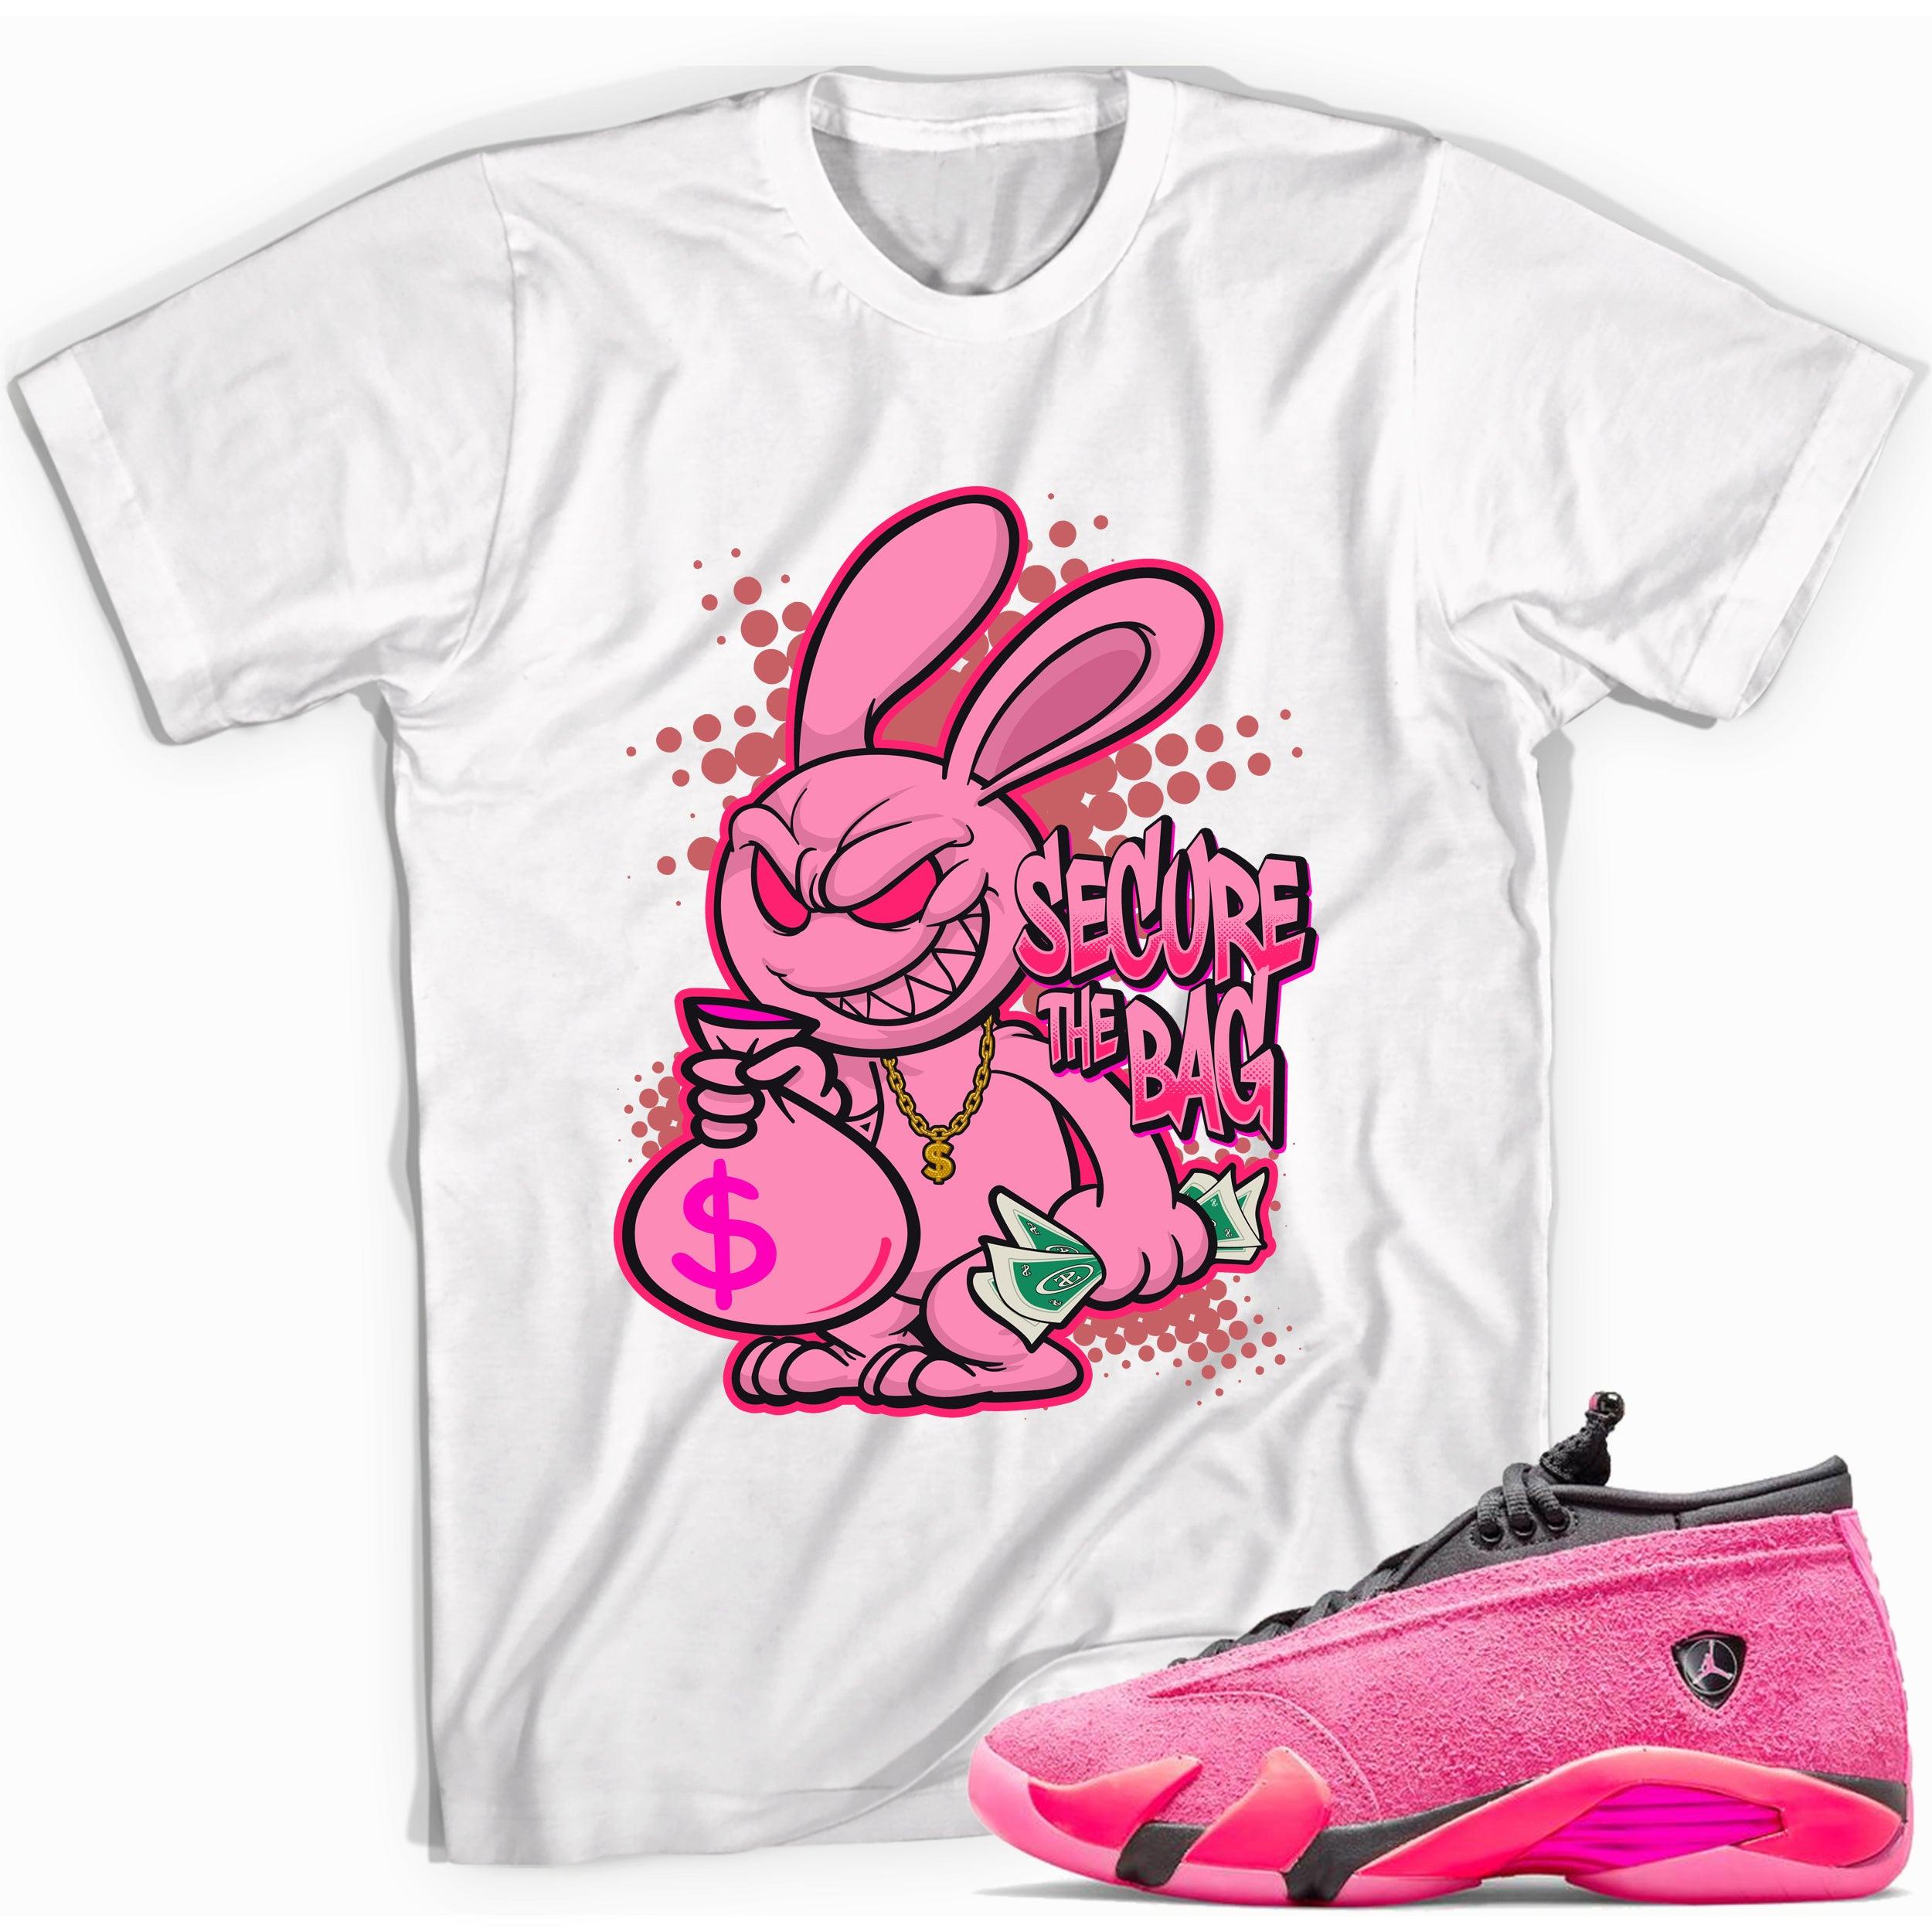 Secure The Bag Shirt Jordan 14s Low Shocking Pink photo